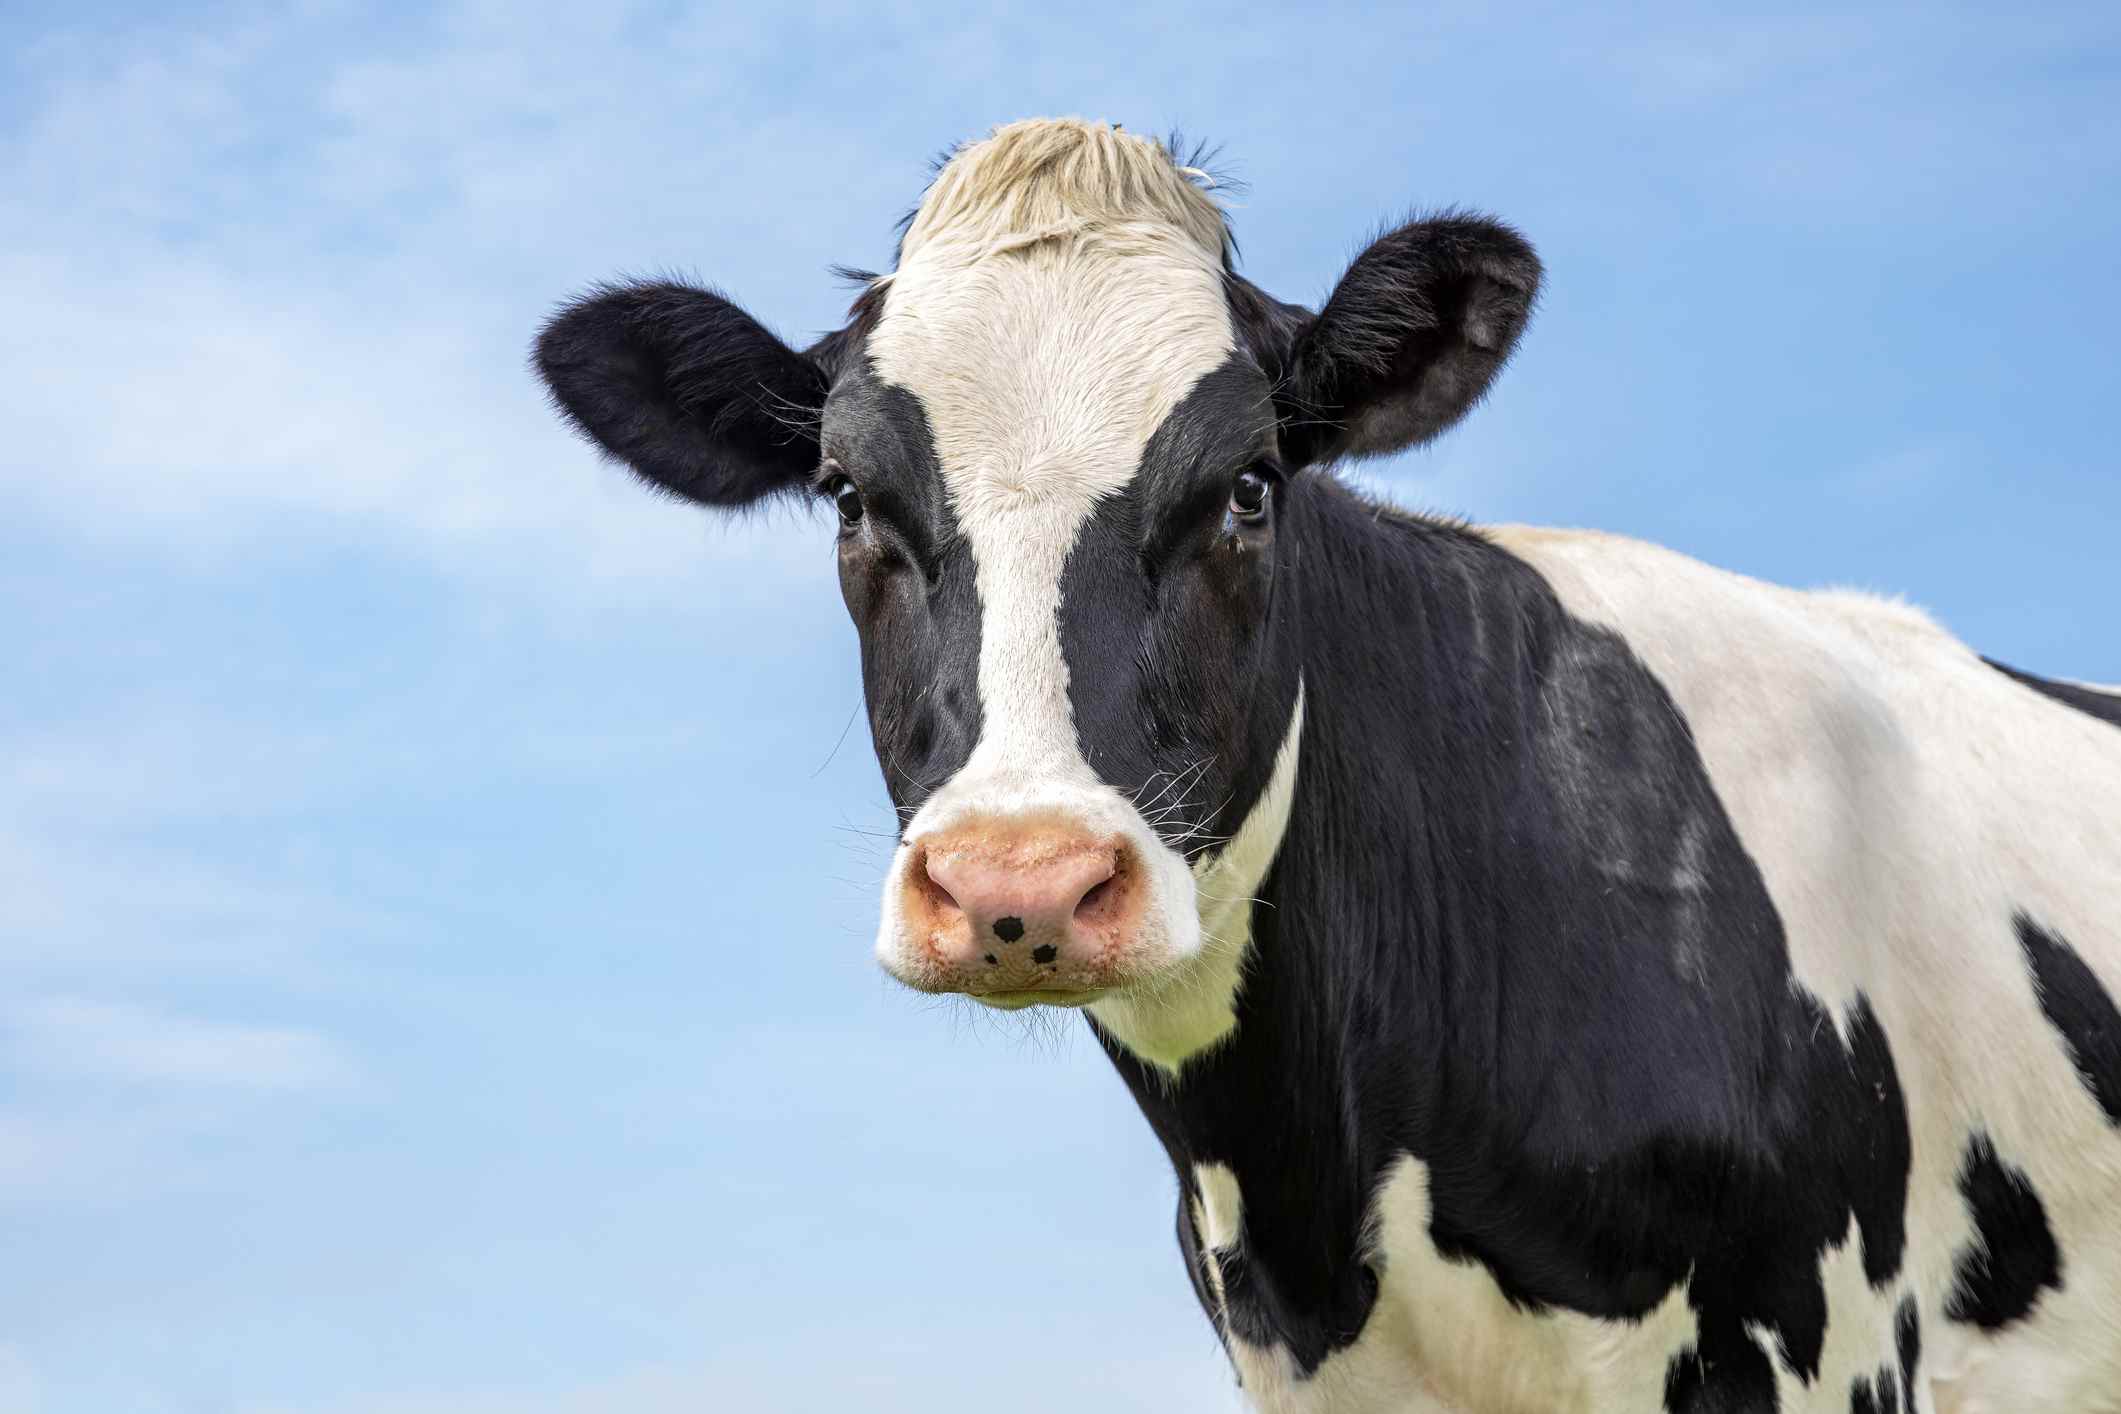 Portrait de la tête d'une vache noire et blanche adulte, regard doux, nez rose, devant un ciel bleu.